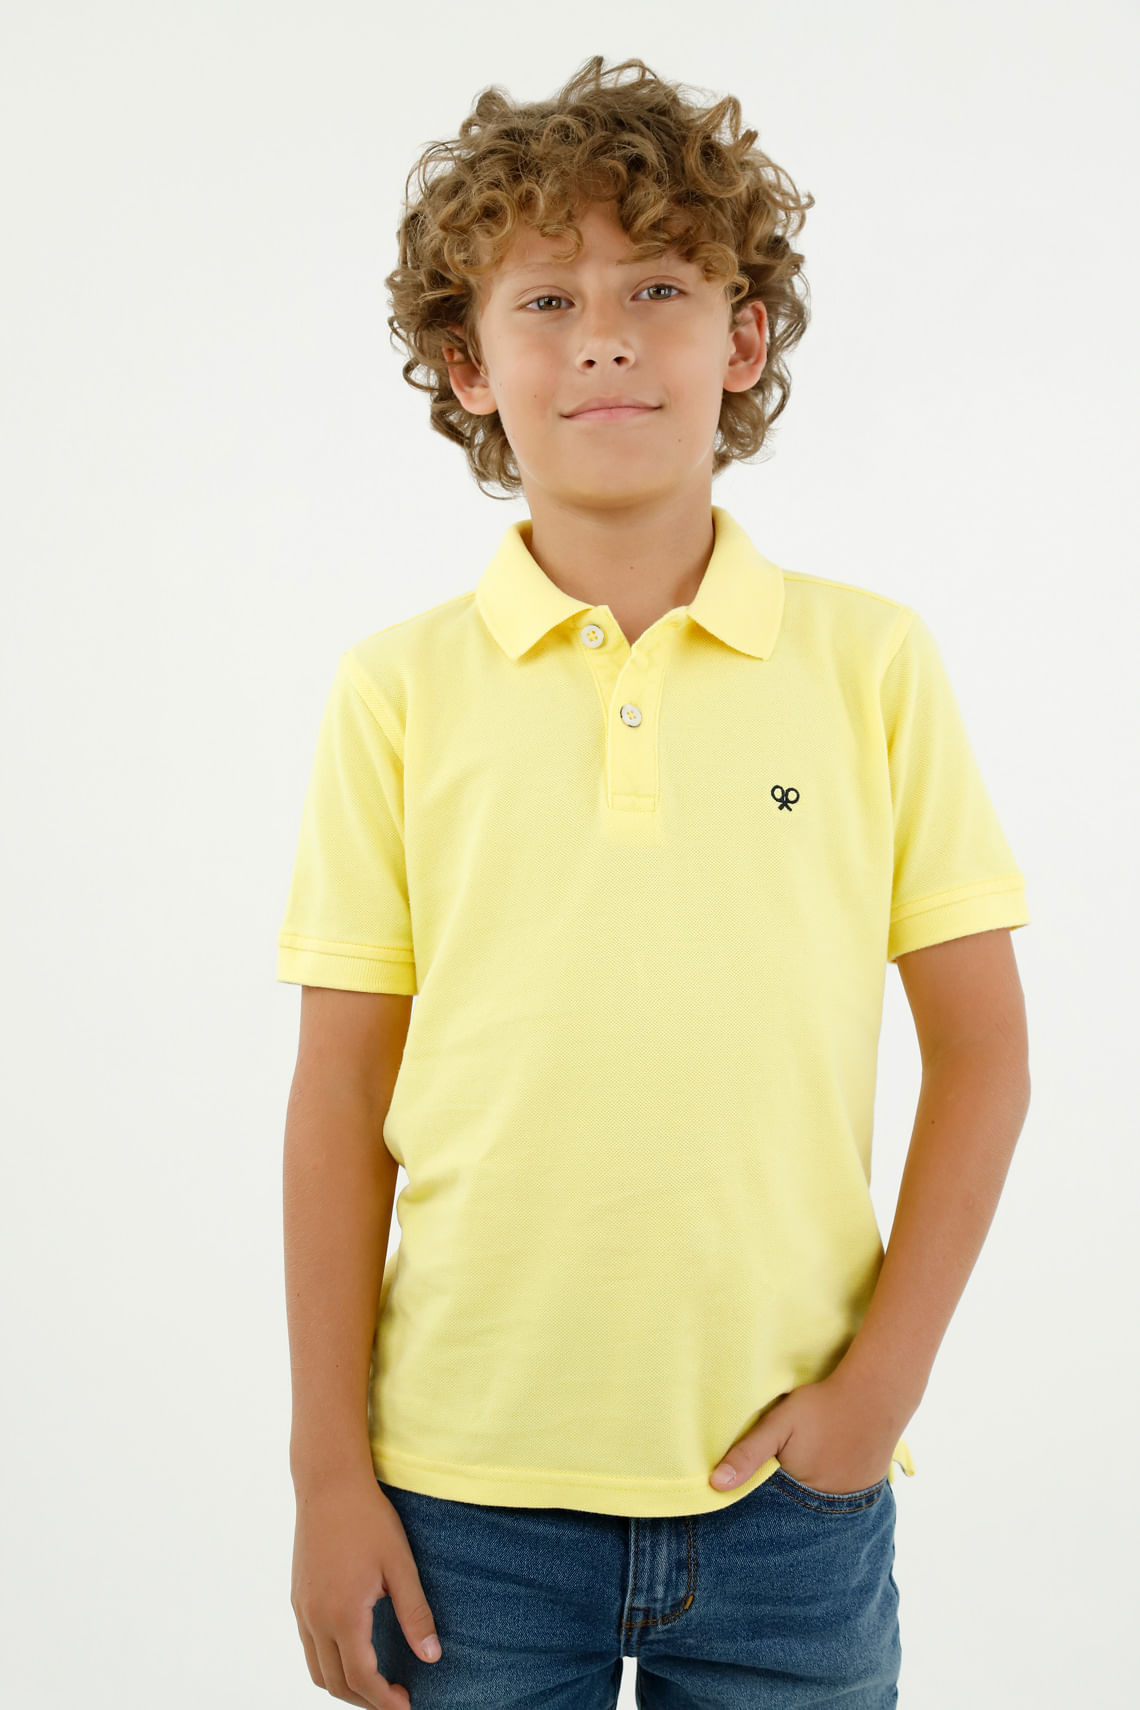 Las mejores ofertas en Niños Amarillo Talla XS Tops, camisas y camisetas  para Niños